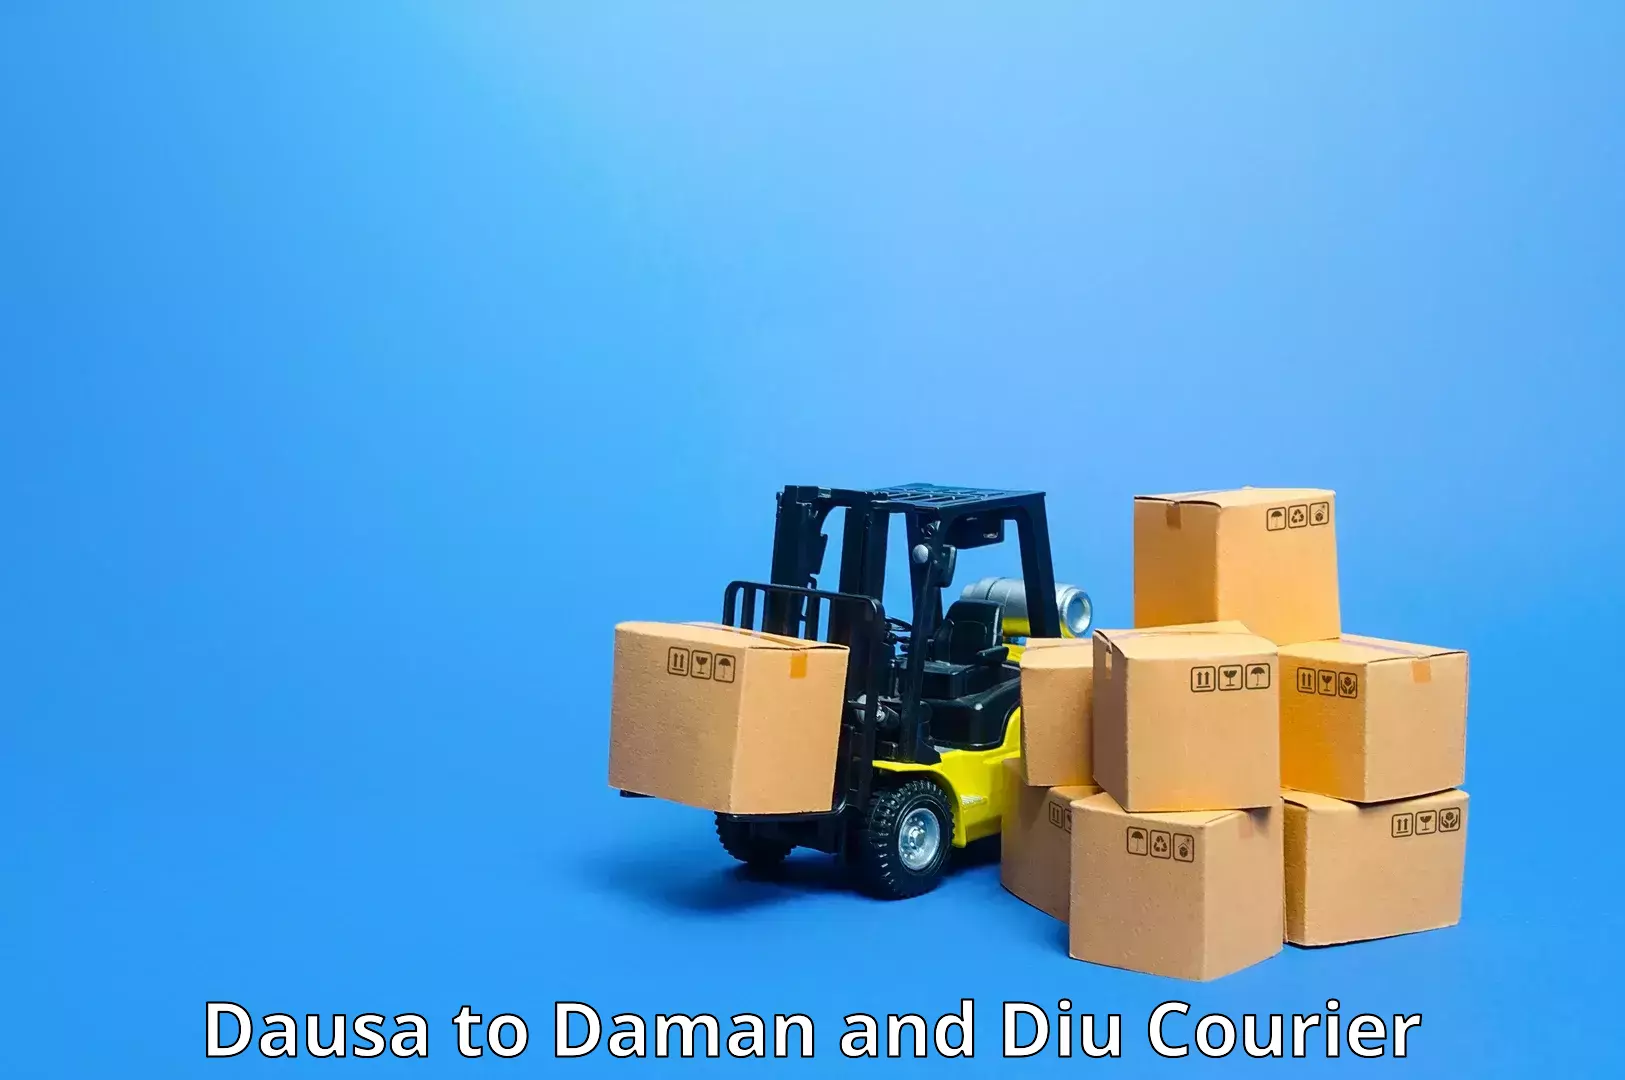 Express logistics service Dausa to Daman